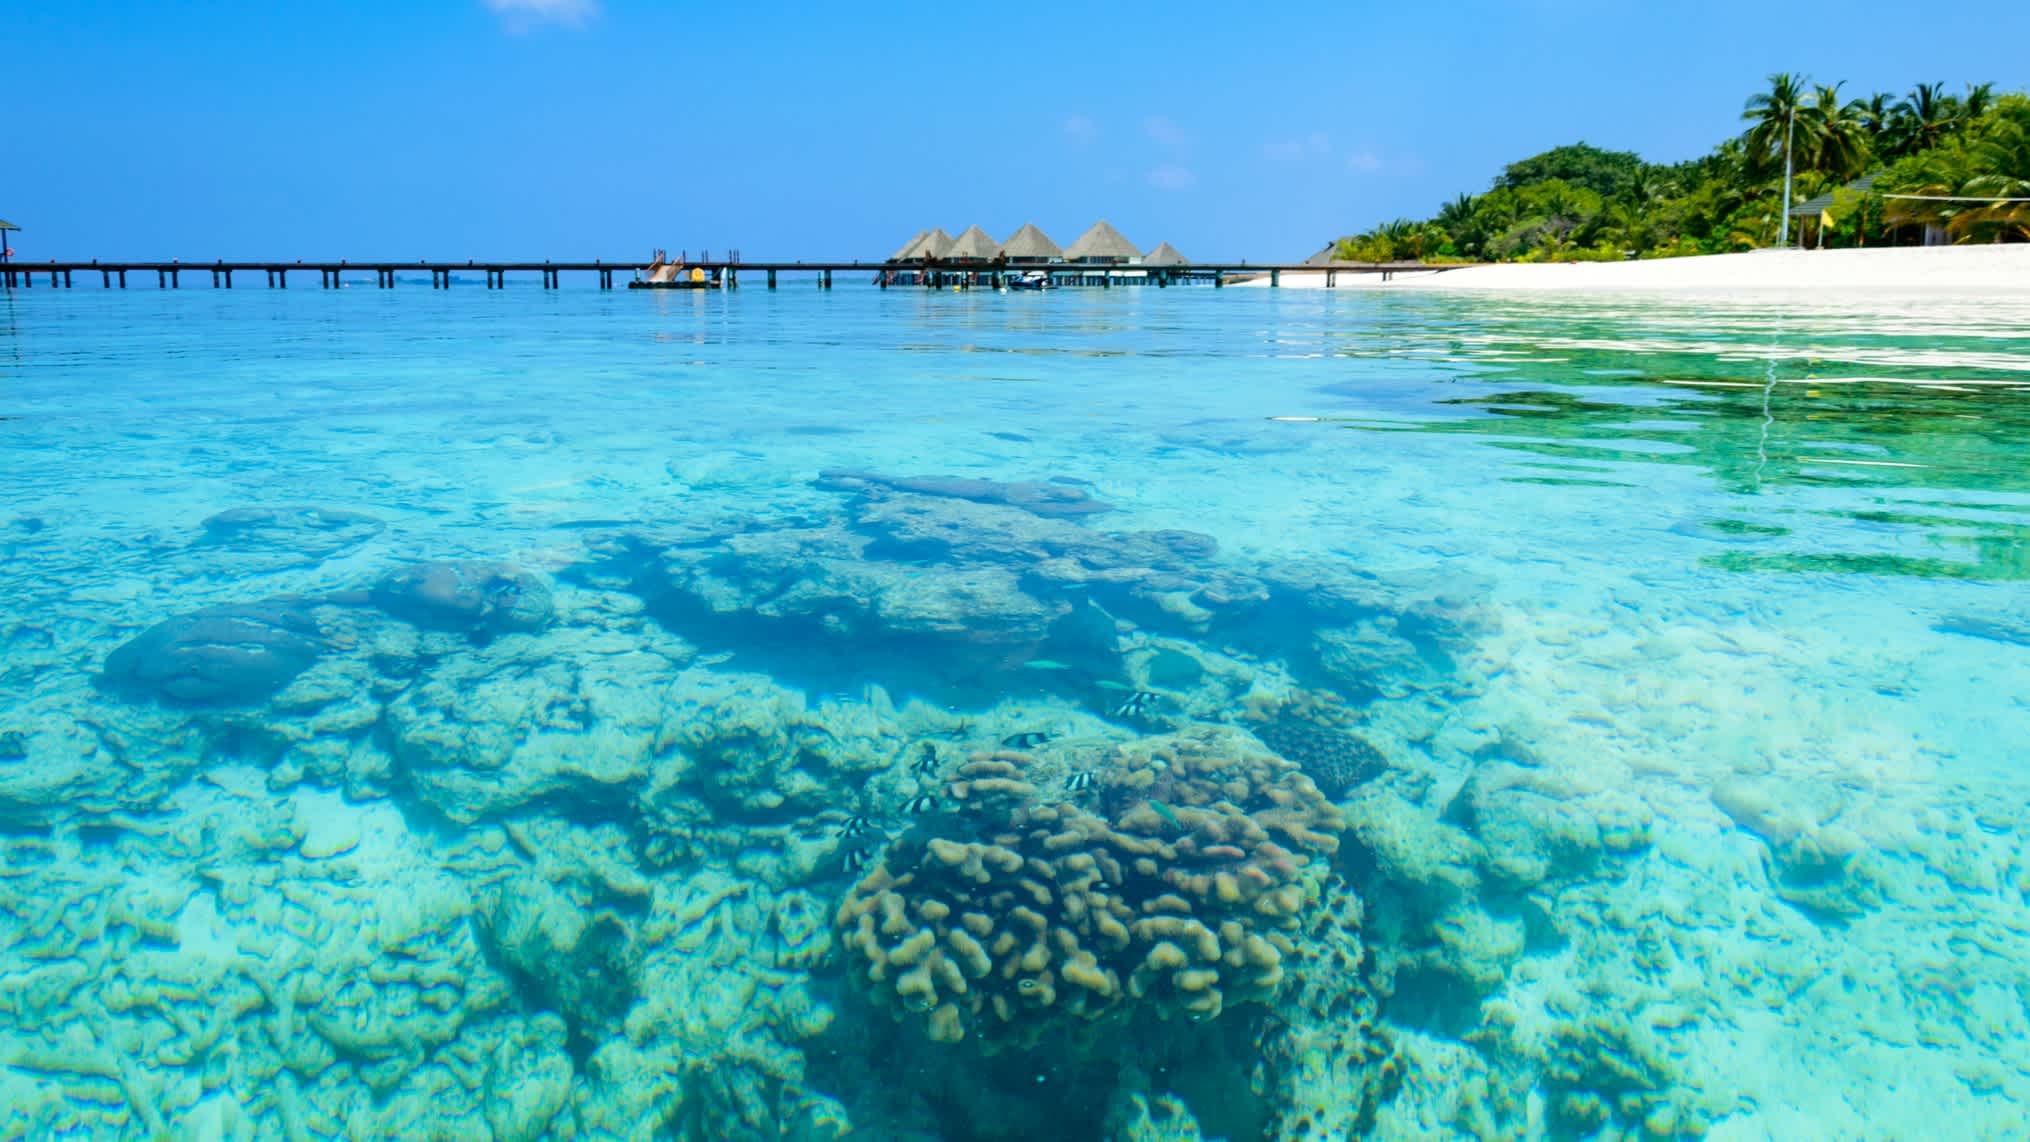 Korallen im türkisblauen Wasser